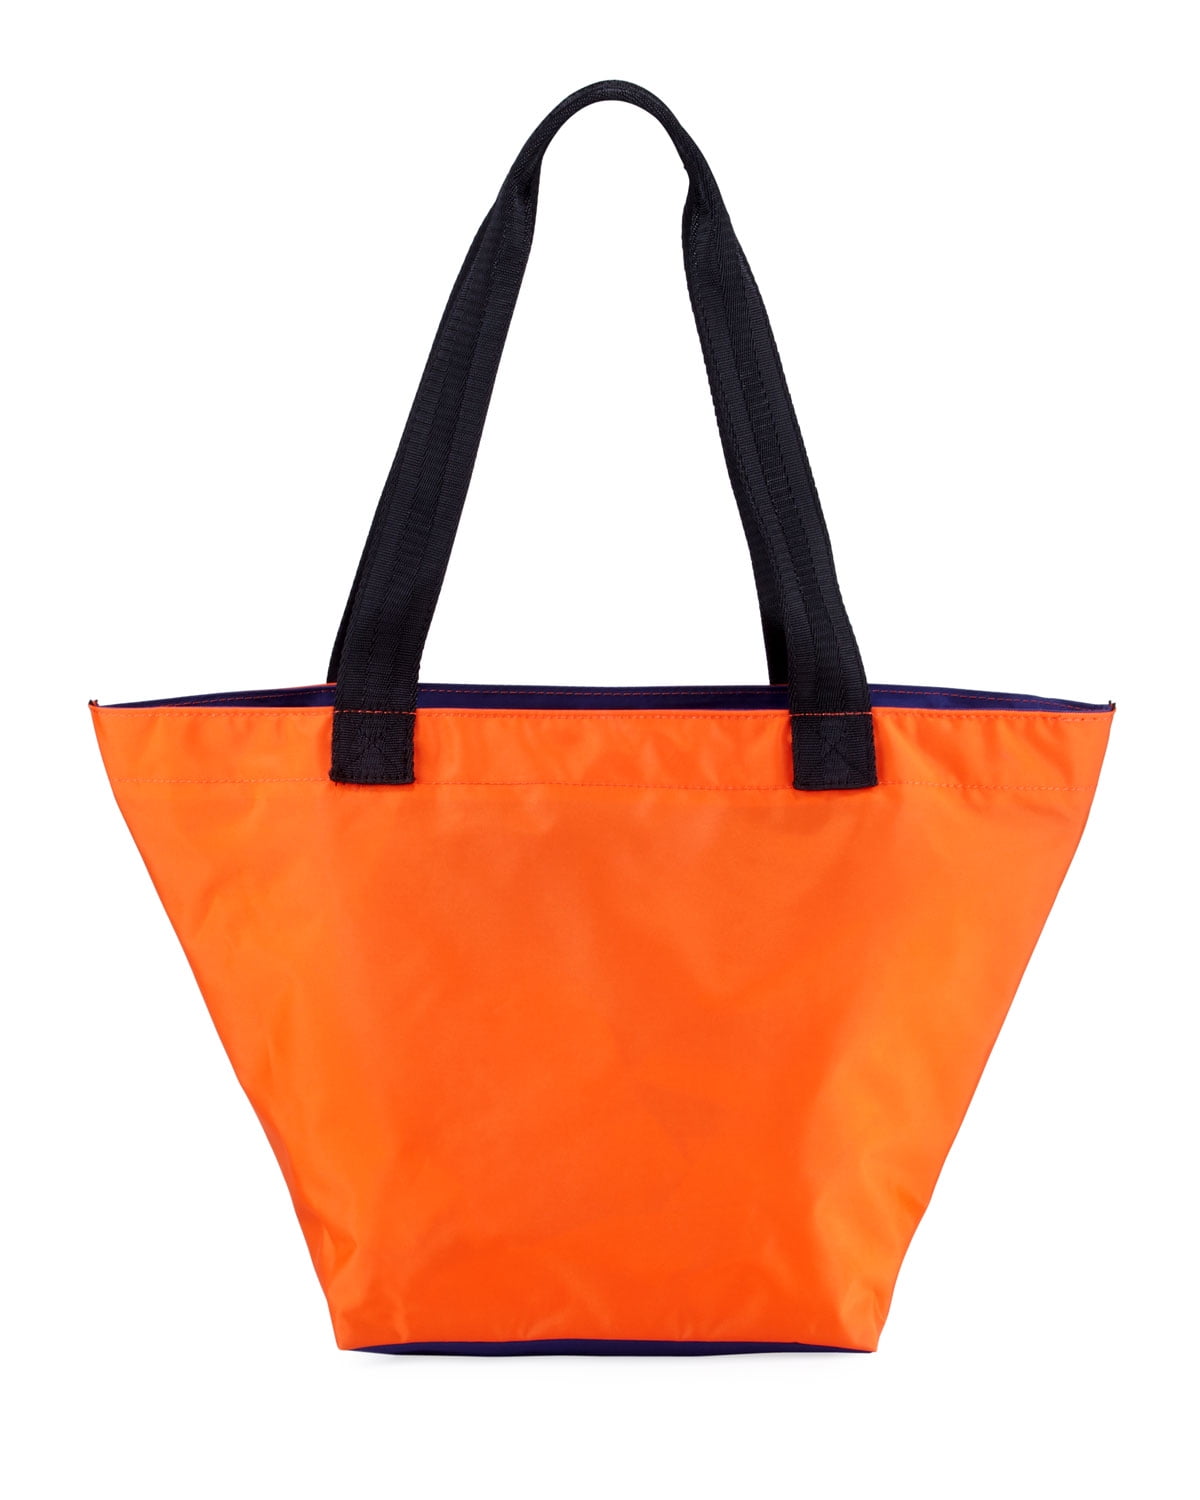 Studio 33 Medium Two-Tone Nylon Tote Handbag orange - Walmart.com